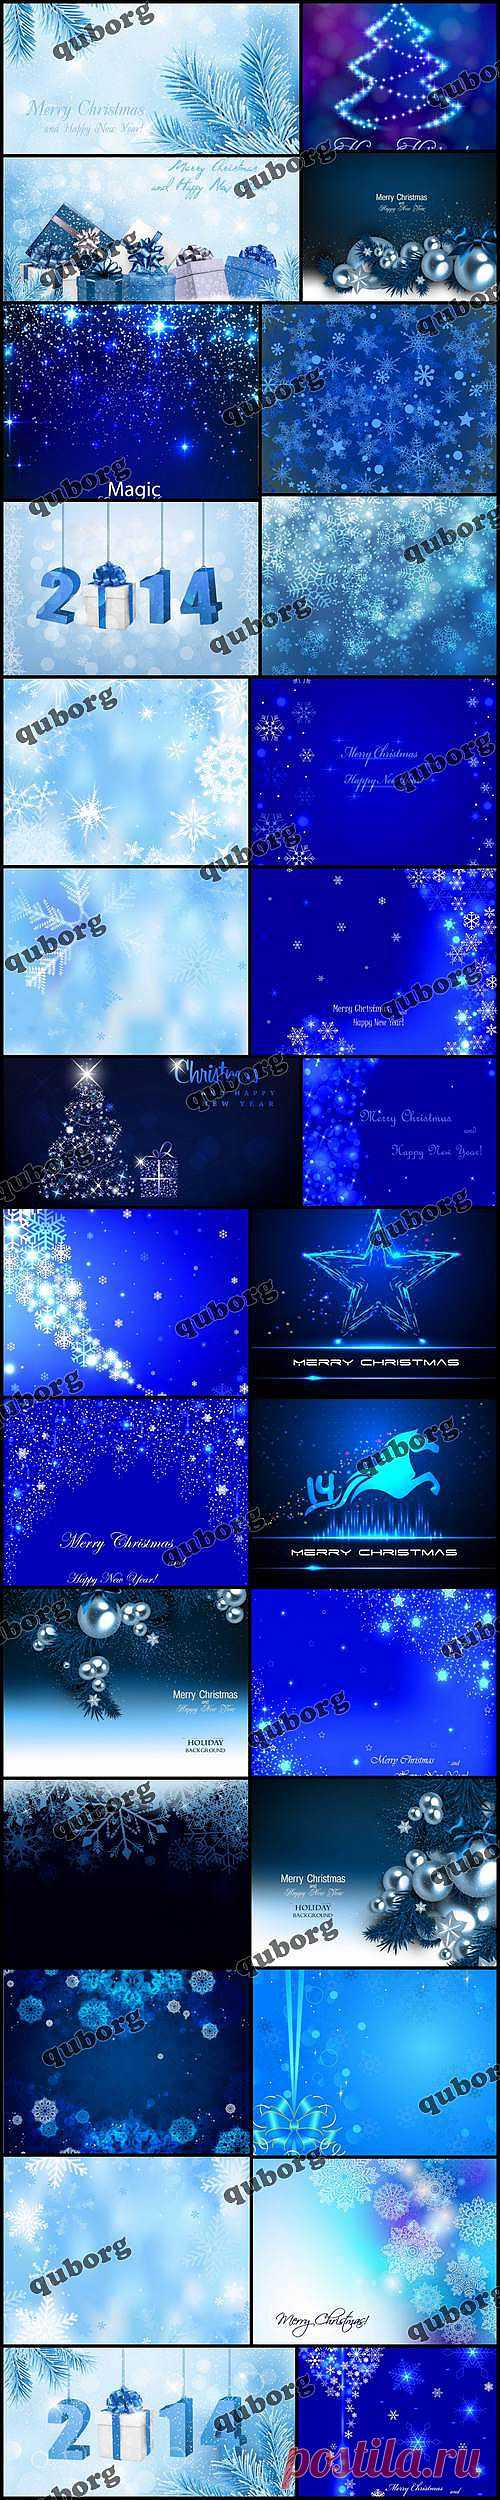 Stock Vector - Blue Christmas Backgrounds » RandL.ru - Все о графике, photoshop и дизайне. Скачать бесплатно photoshop, фото, картинки, обои, рисунки, иконки, клипарты, шаблоны.